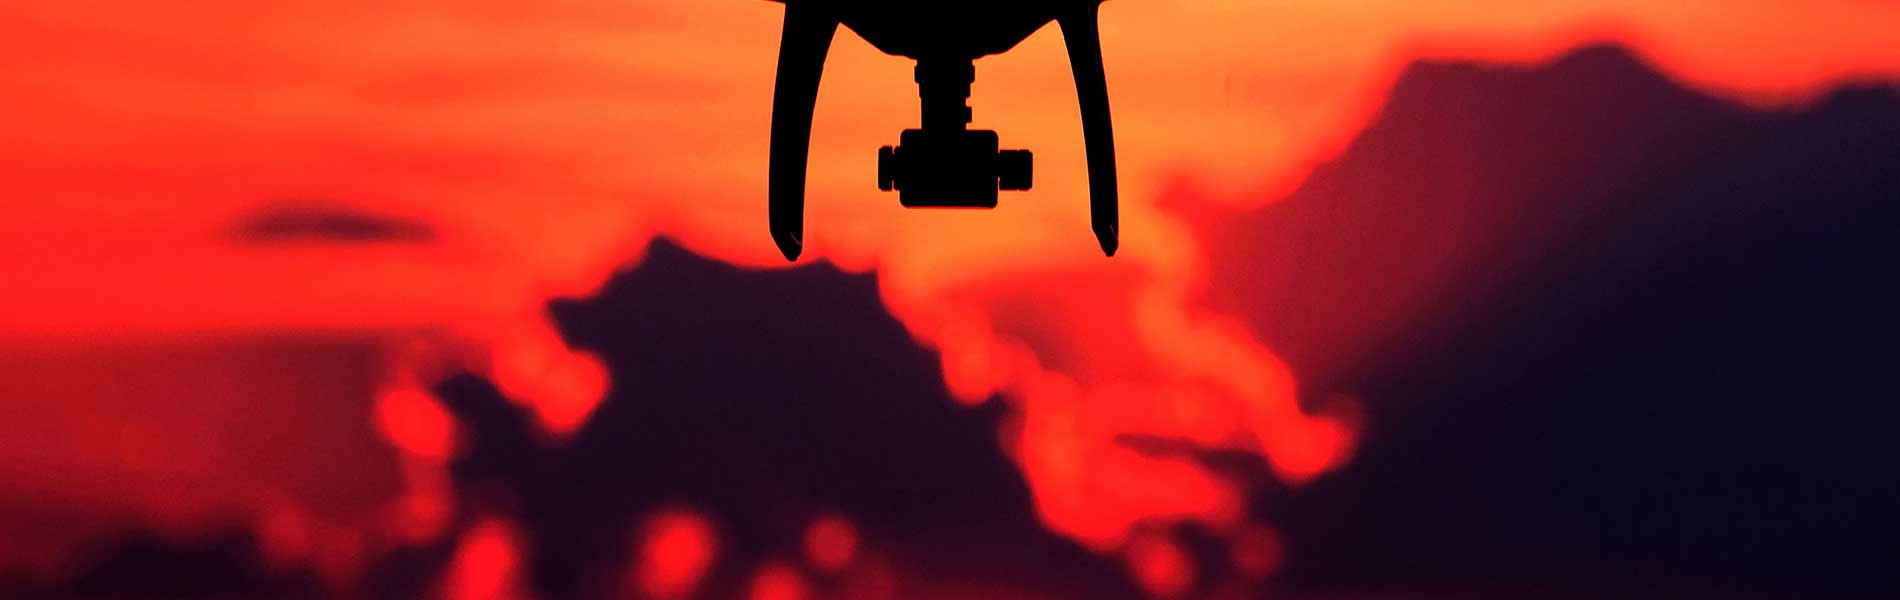 Suivi chantier drone